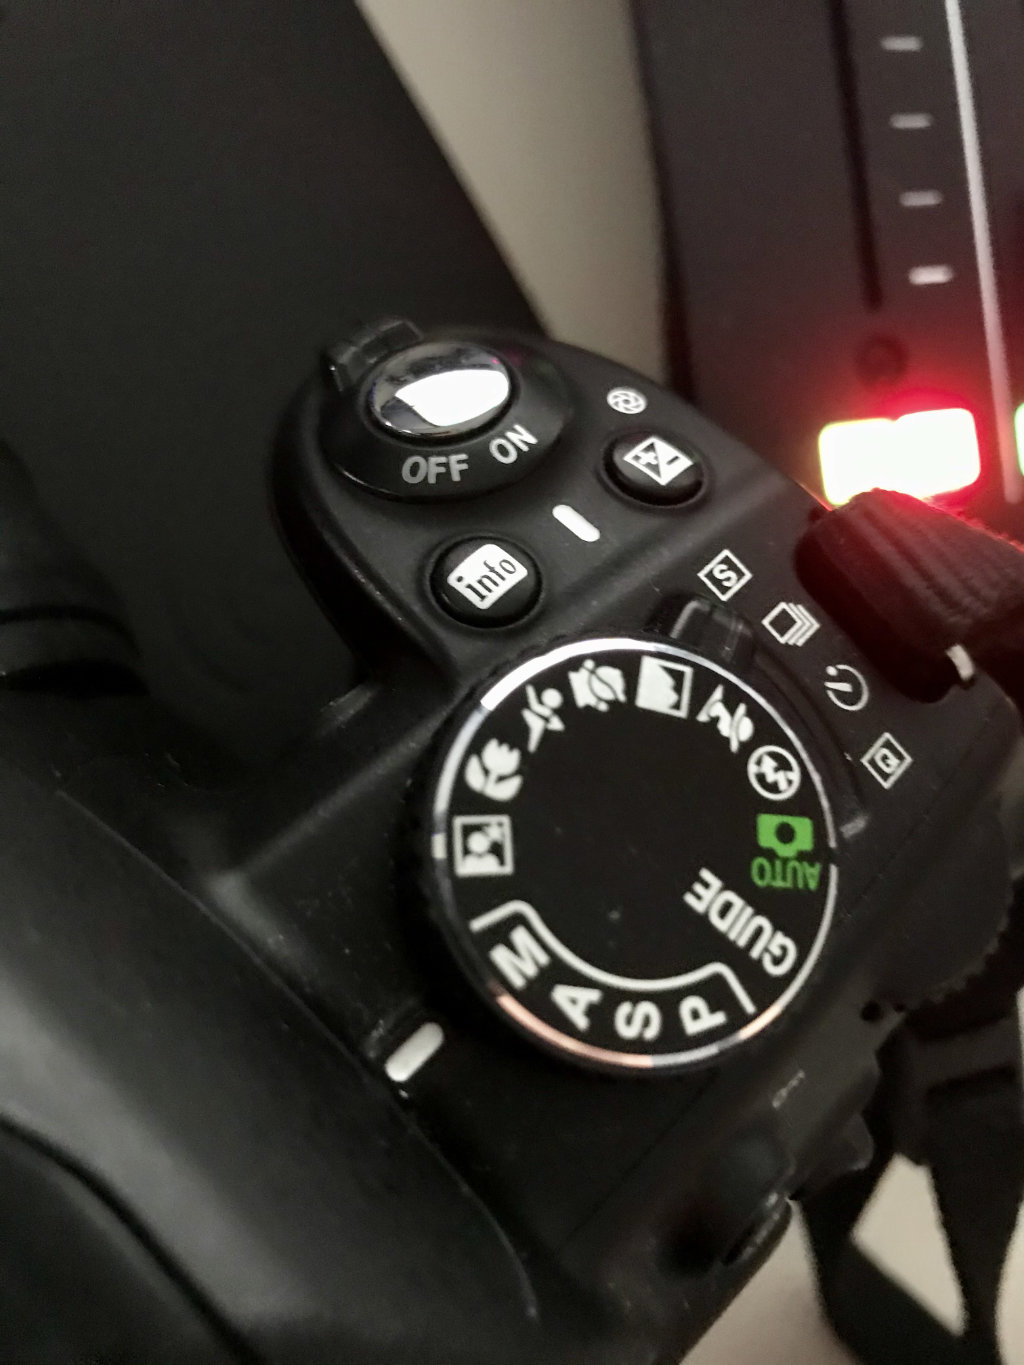 Info button on Nikon D3100 DSLR